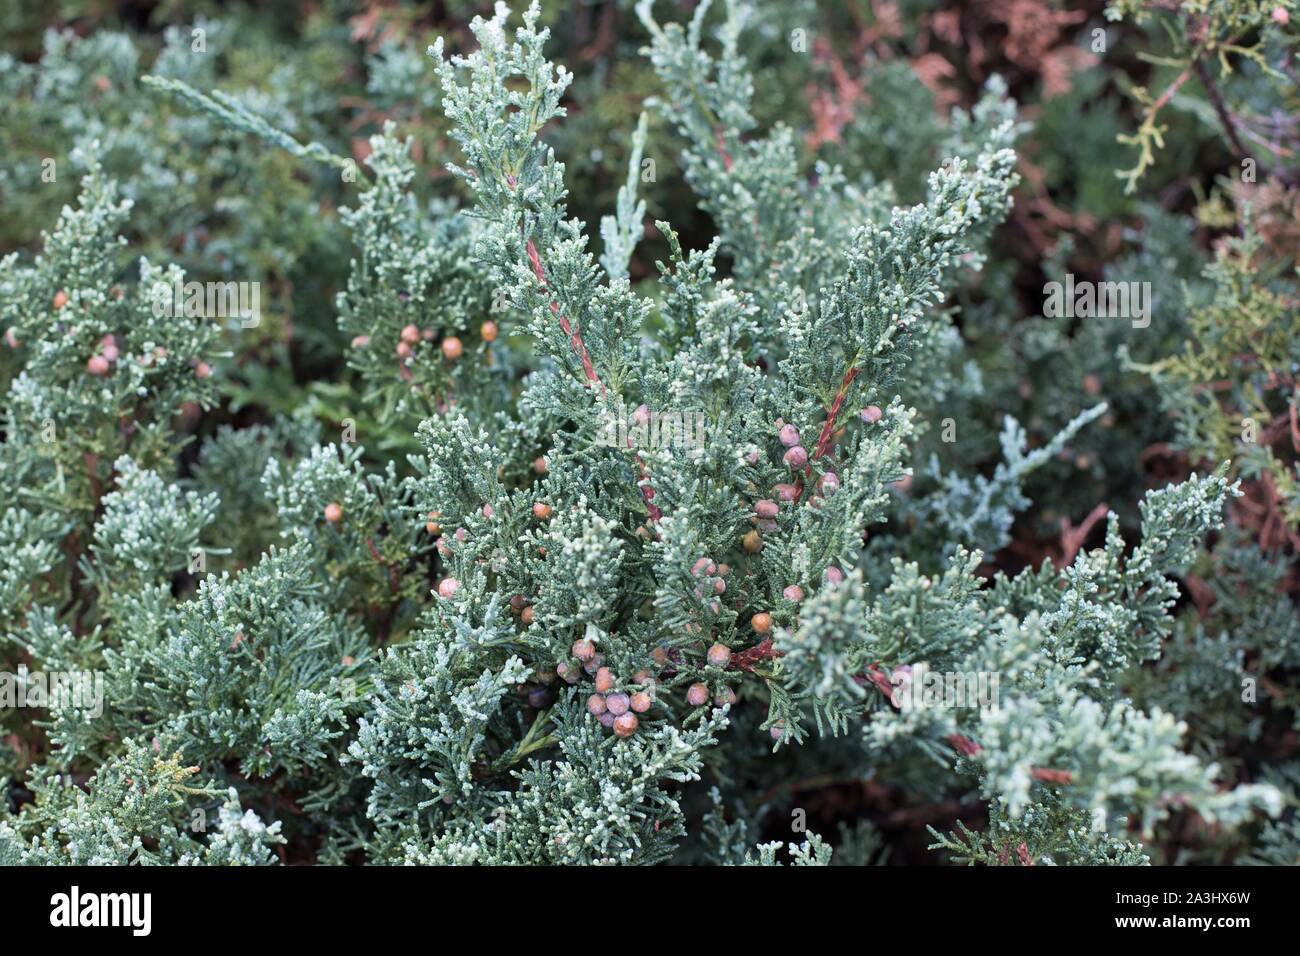 Juniperus Sargentii 'Glauca', Sargent's juniper. Stock Photo